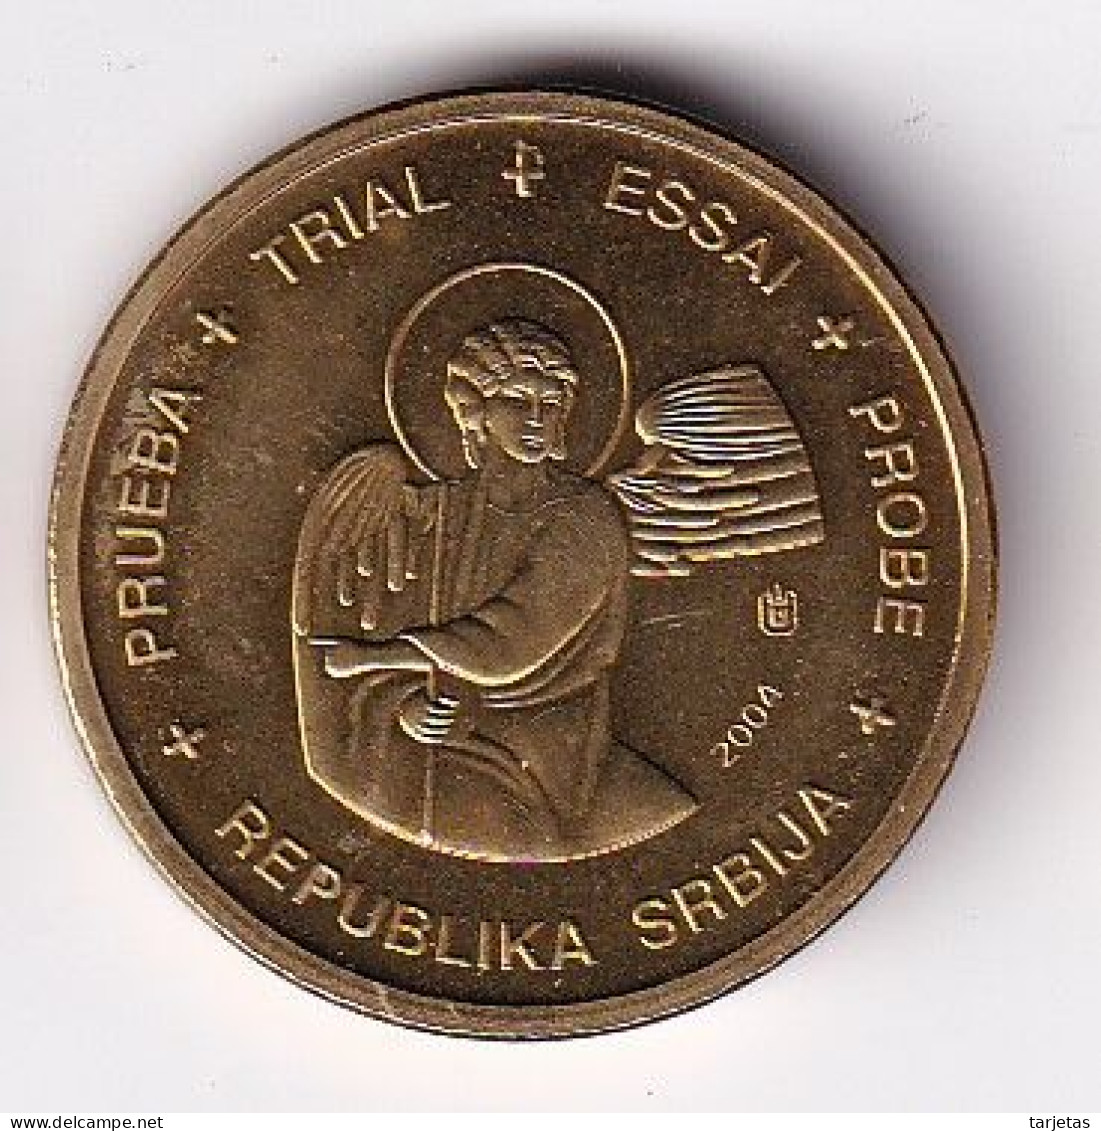 MONEDA DE PRUEBA DE SERBIA DE 10 CENTIMOS DE EURO DEL AÑO 2004 (COIN) - Serbia